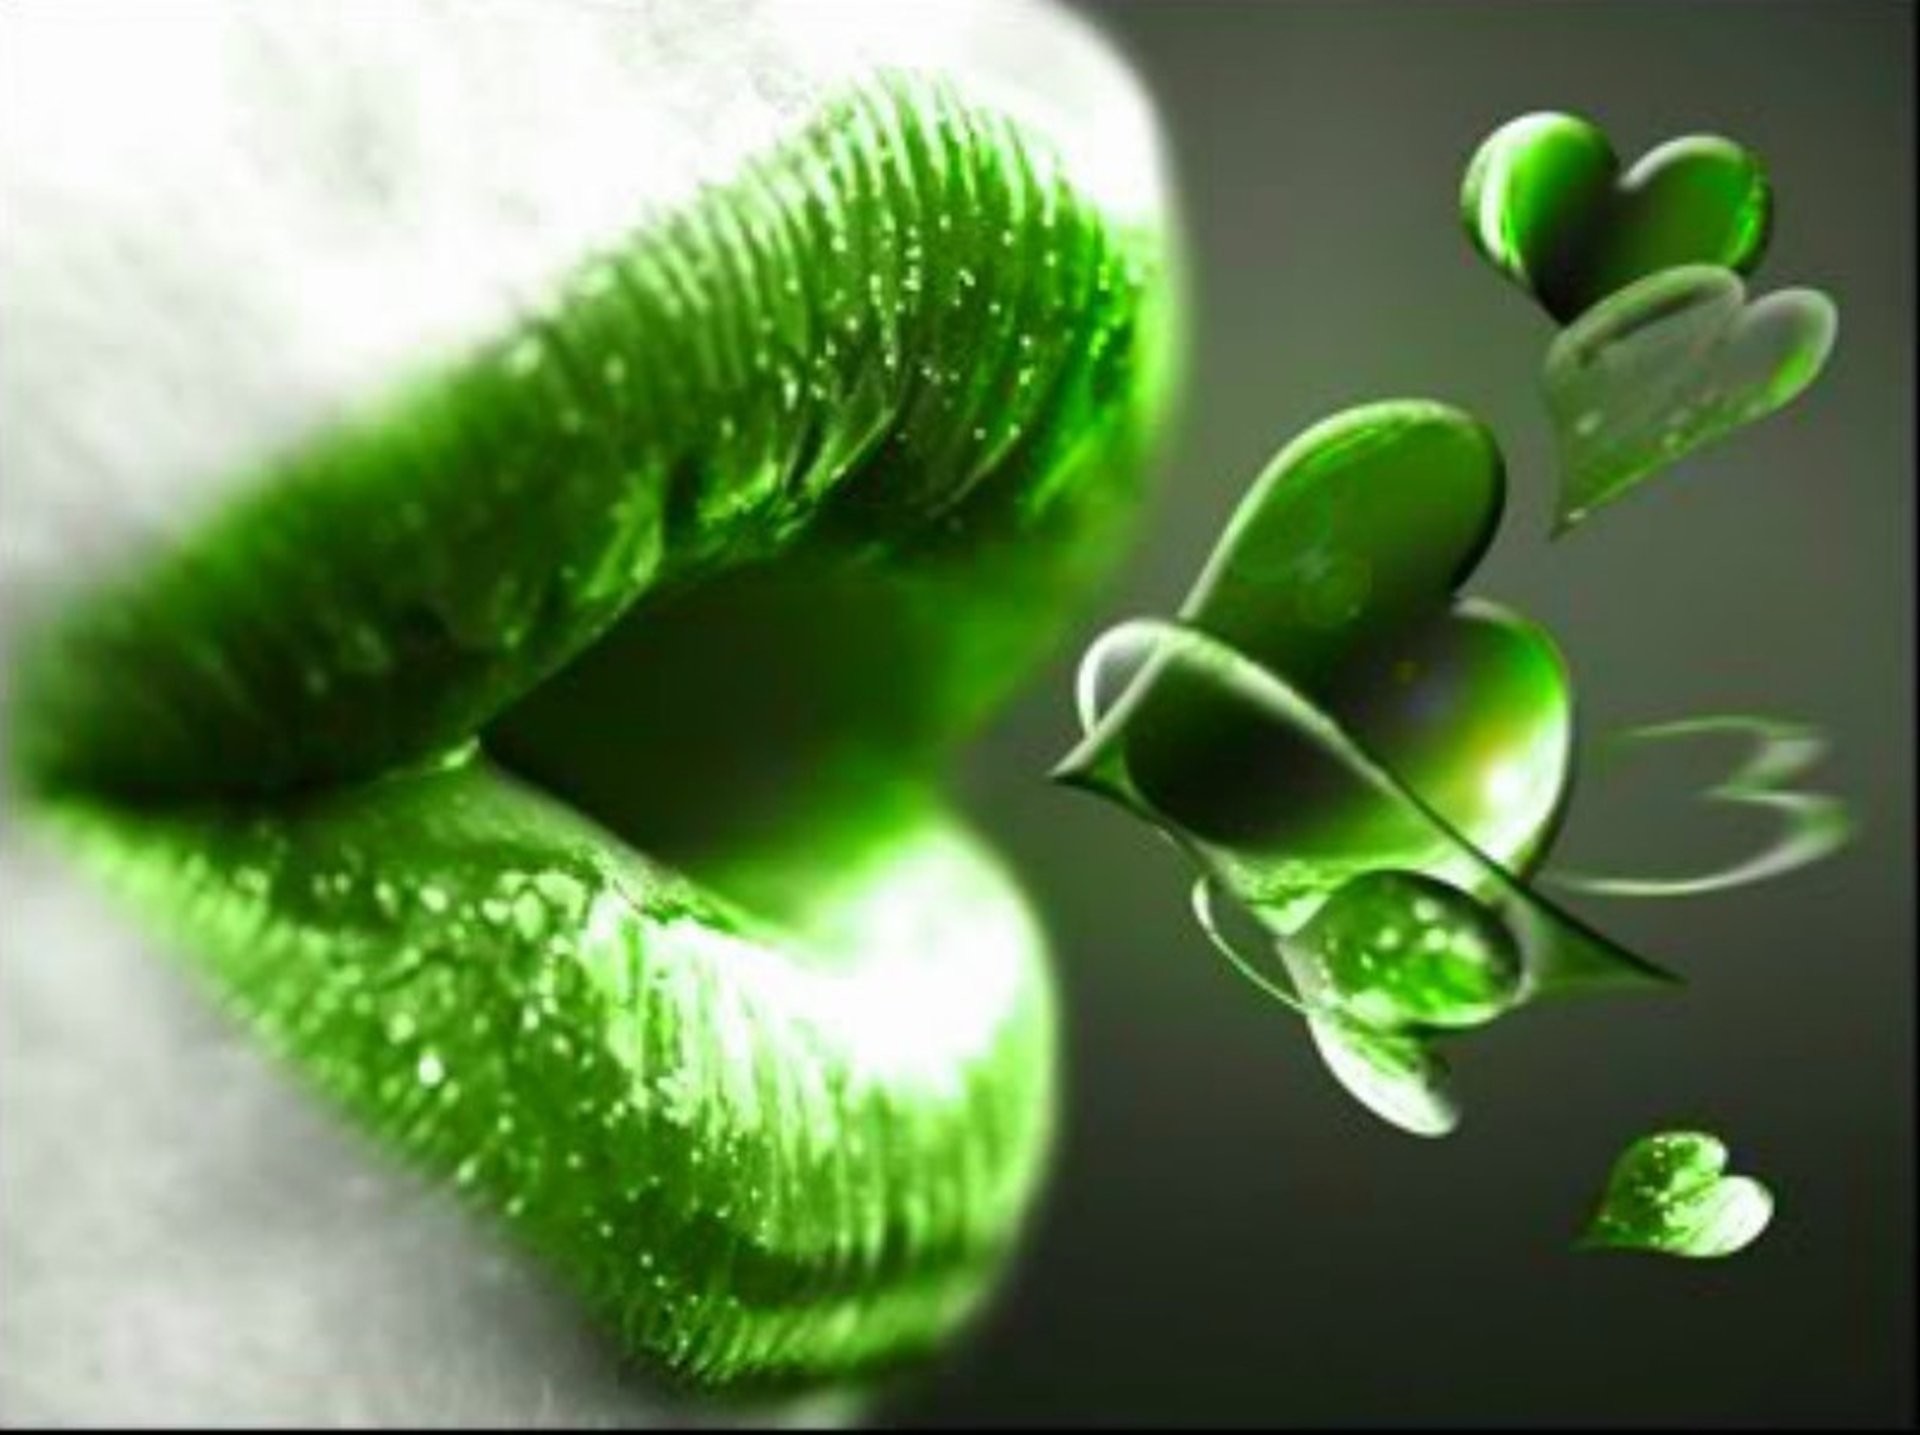 Abstract Mouth Lip 3d Hearts Green Kiss Wallpaper - Good Morning Blowing Kisses - HD Wallpaper 